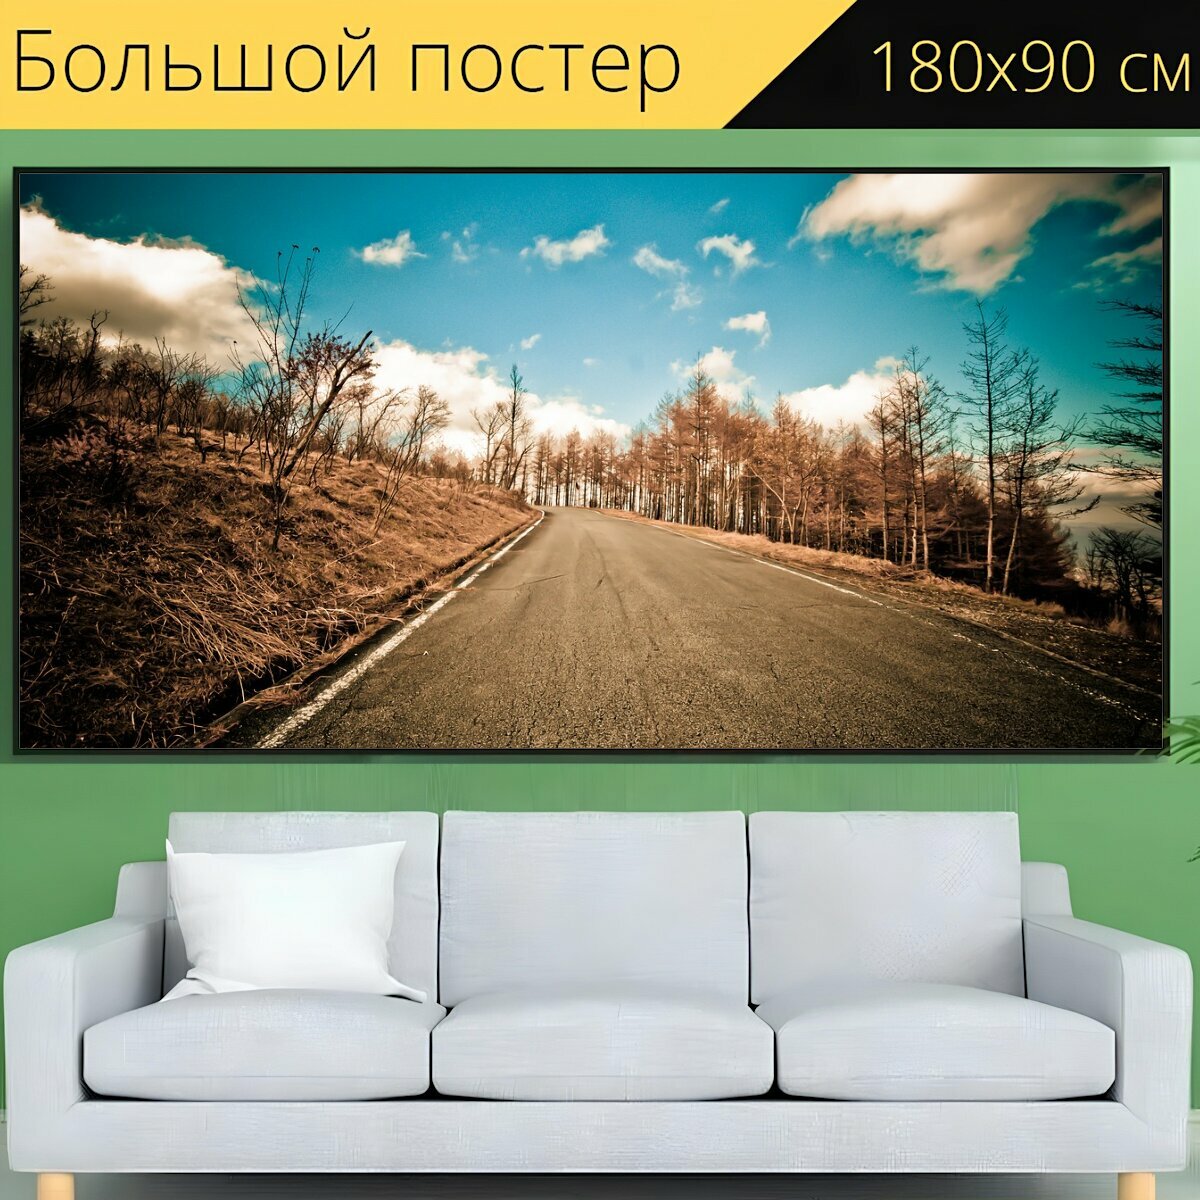 Большой постер "Дорога, путешествовать, способ" 180 x 90 см. для интерьера